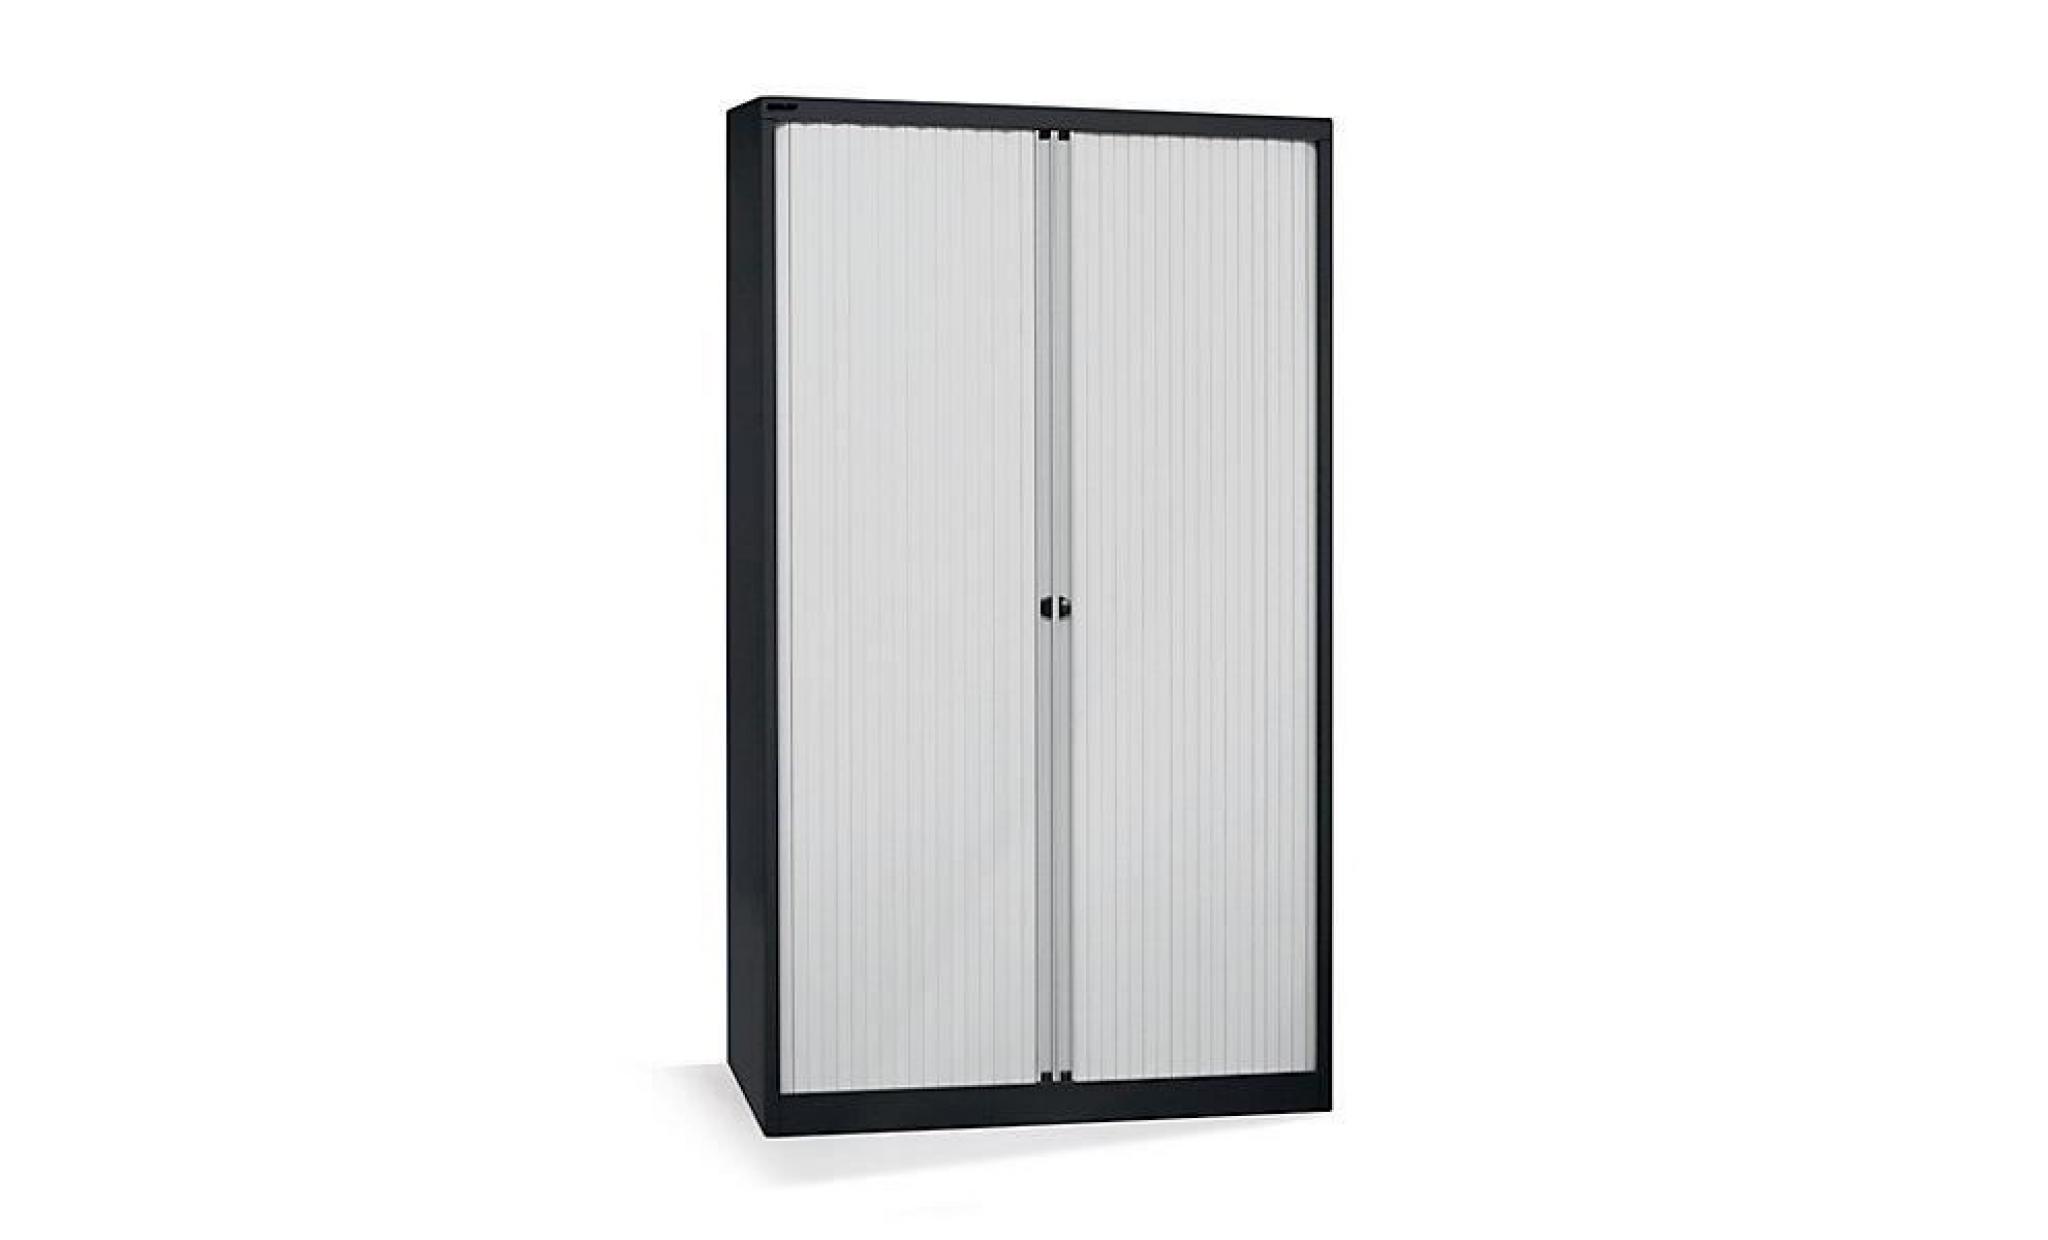 bisley armoire à rideaux   horizontal, noir profond / gris clair h x l 695 x 800 mm, 1 tablette   armoire basse armoire de bureau